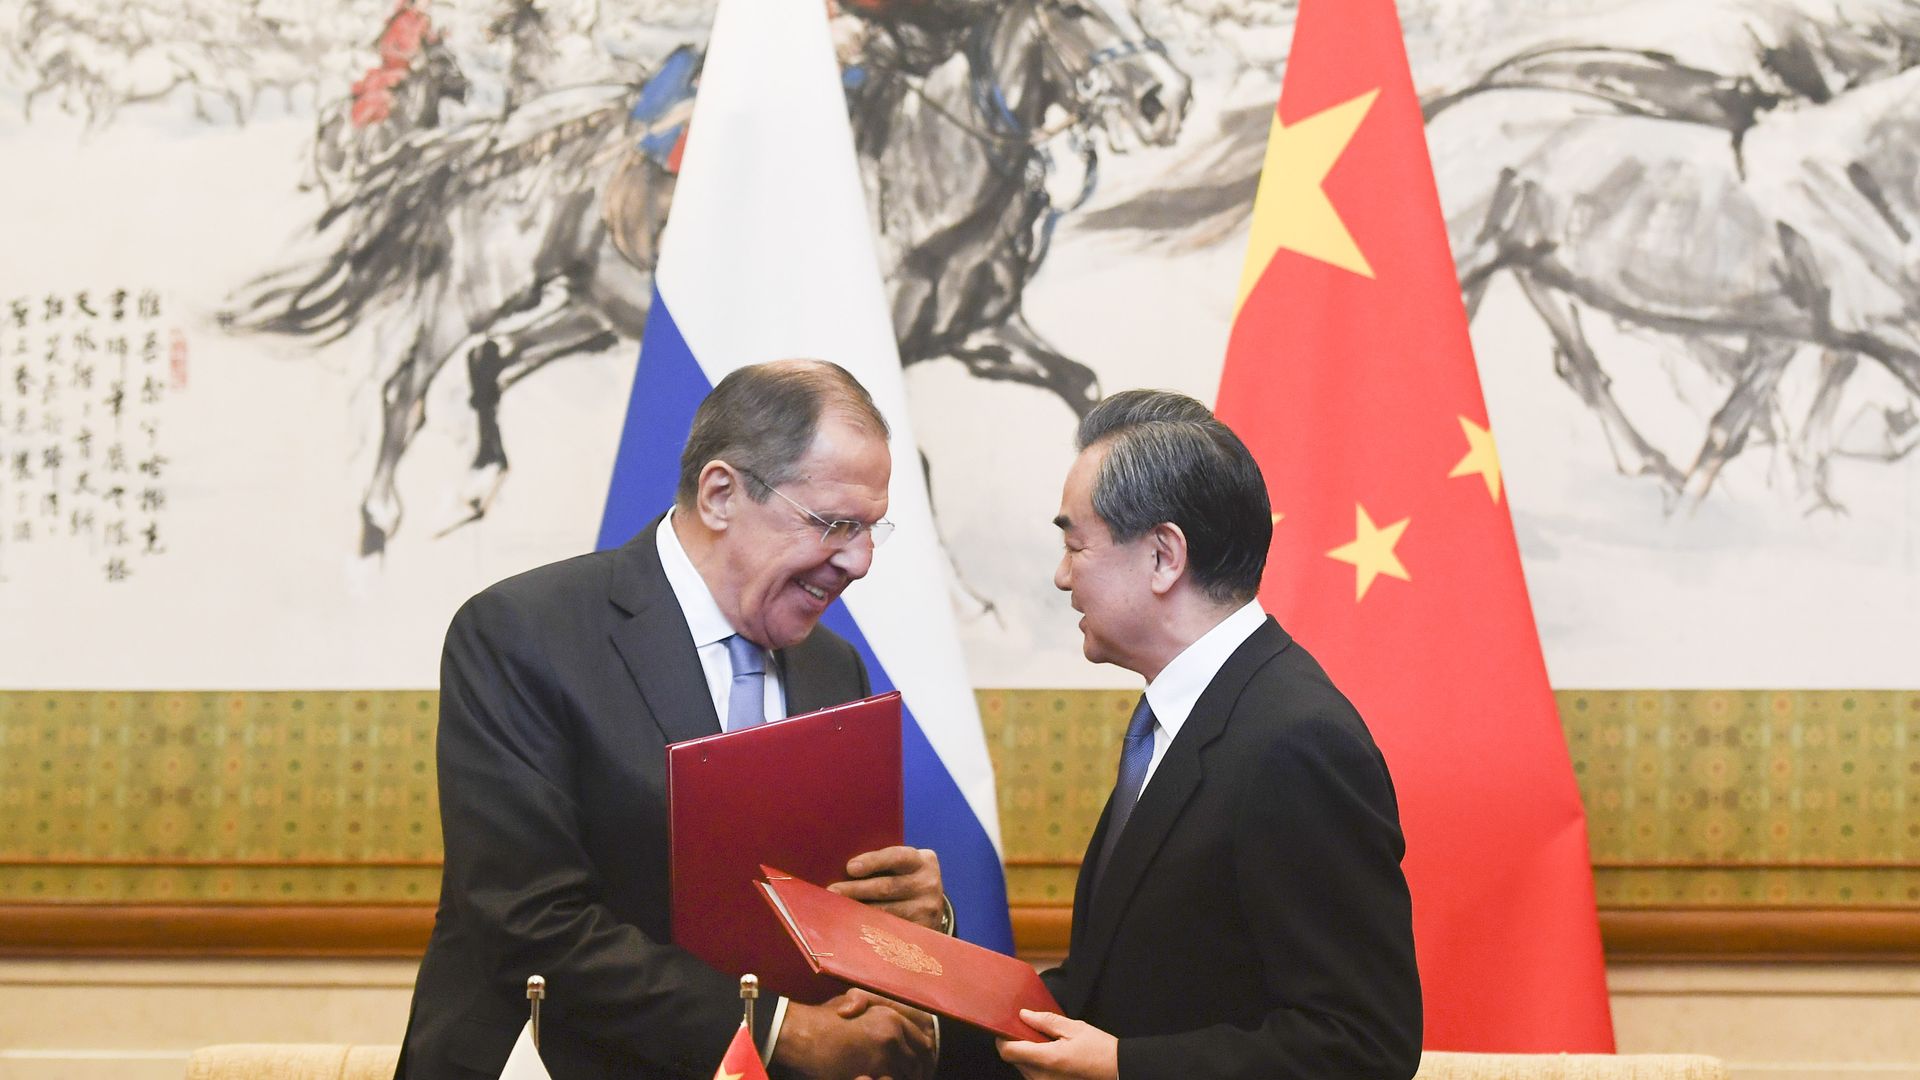 Ο υπουργός Εξωτερικών της Ρωσίας Σεργκέι Λαβρόφ δίνει τα χέρια με τον Κινέζο υπουργό Εξωτερικών Γουάνγκ Γι